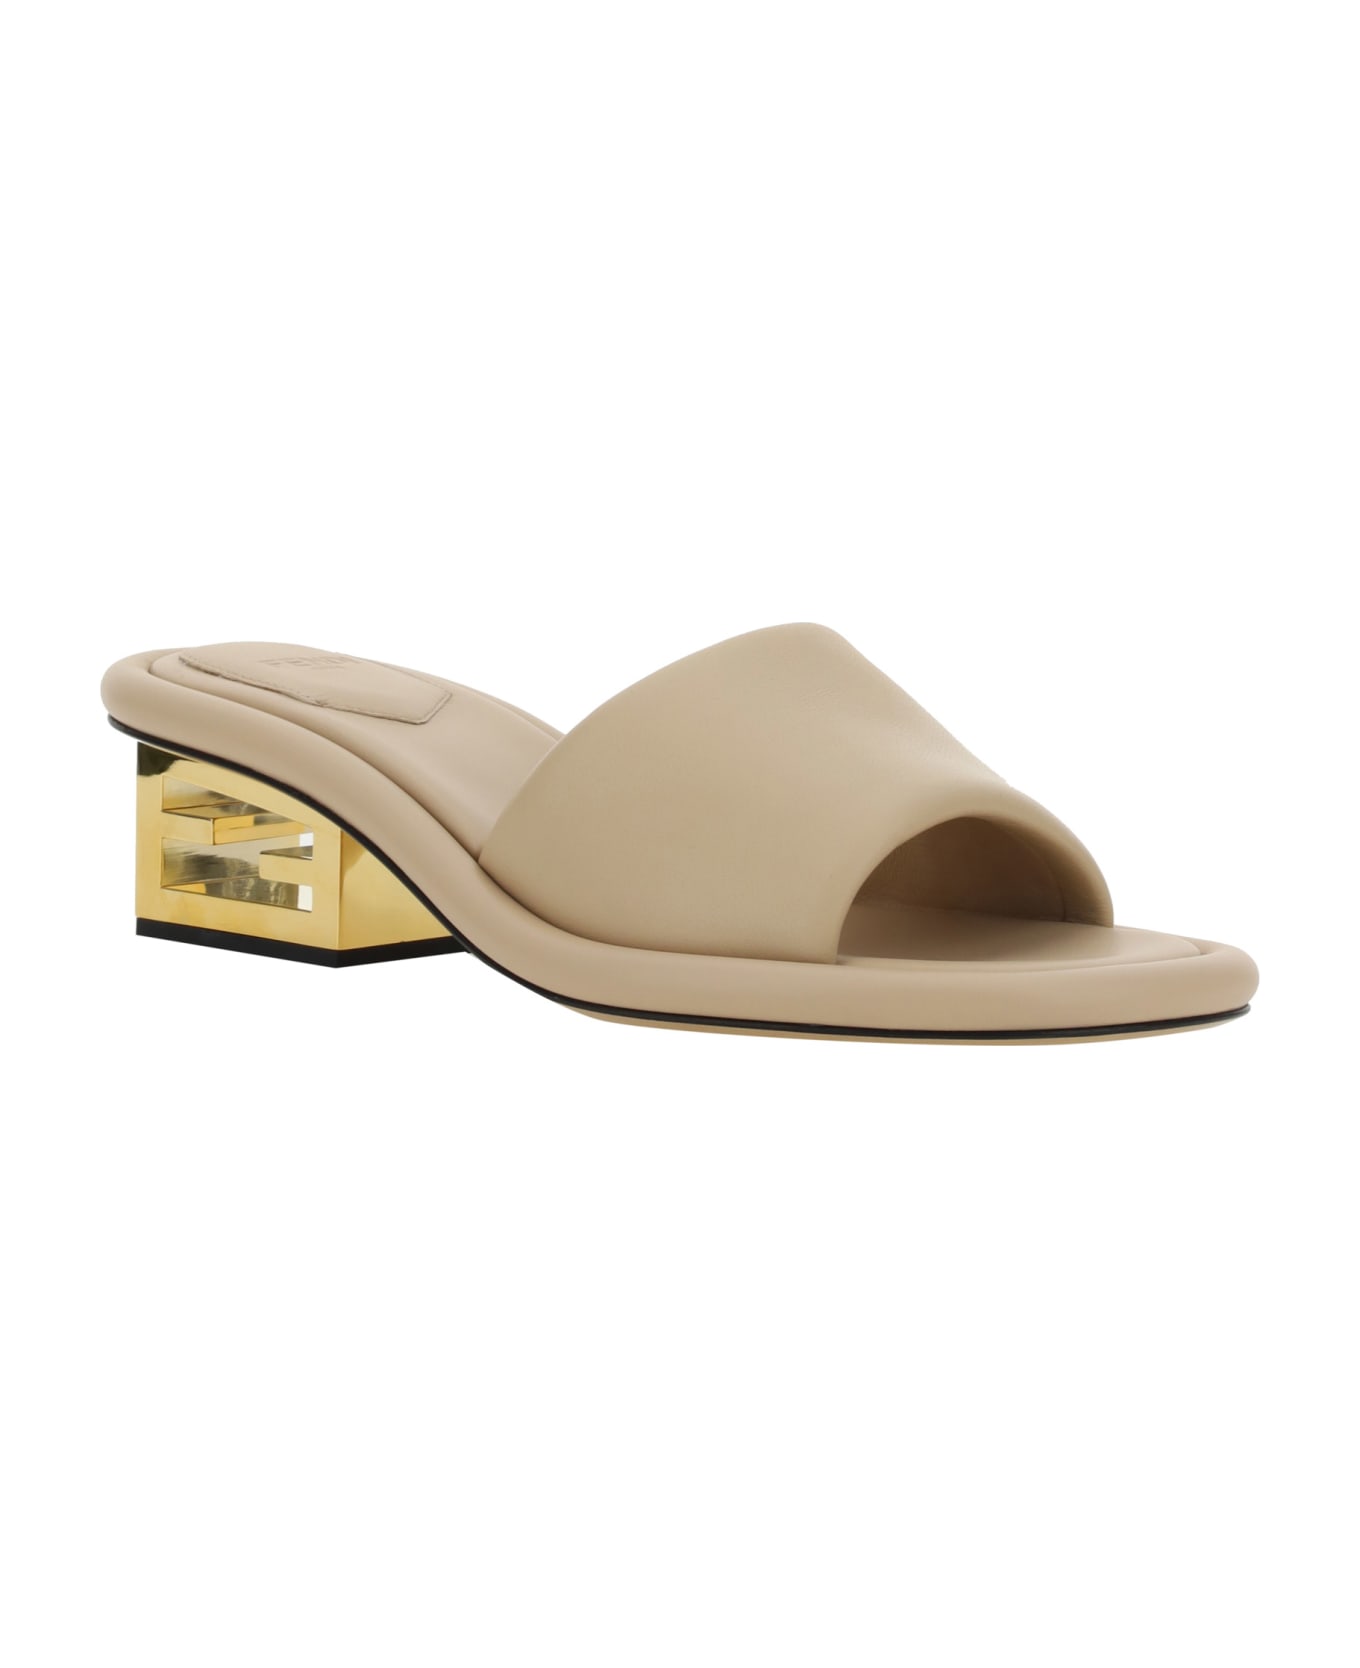 Fendi Baguette Nappa Leather Sandals - Buff サンダル